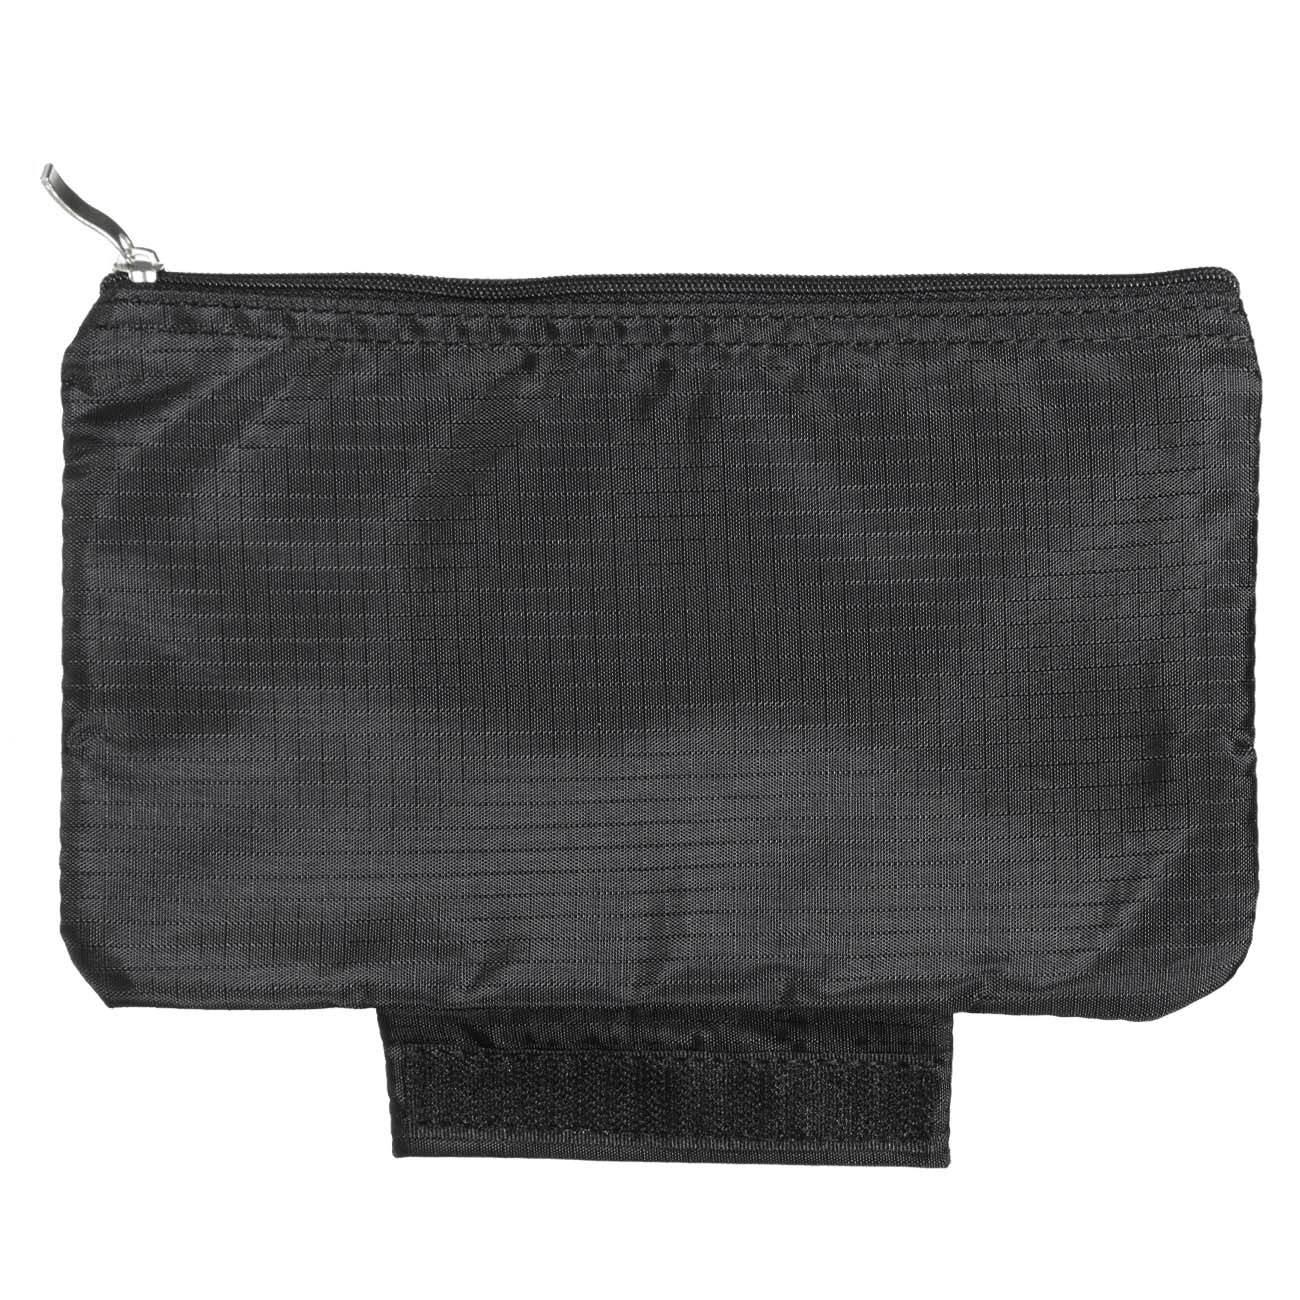 Organizer for women's underwear, 26x13x12 cm, black, Easy Travel изображение № 5